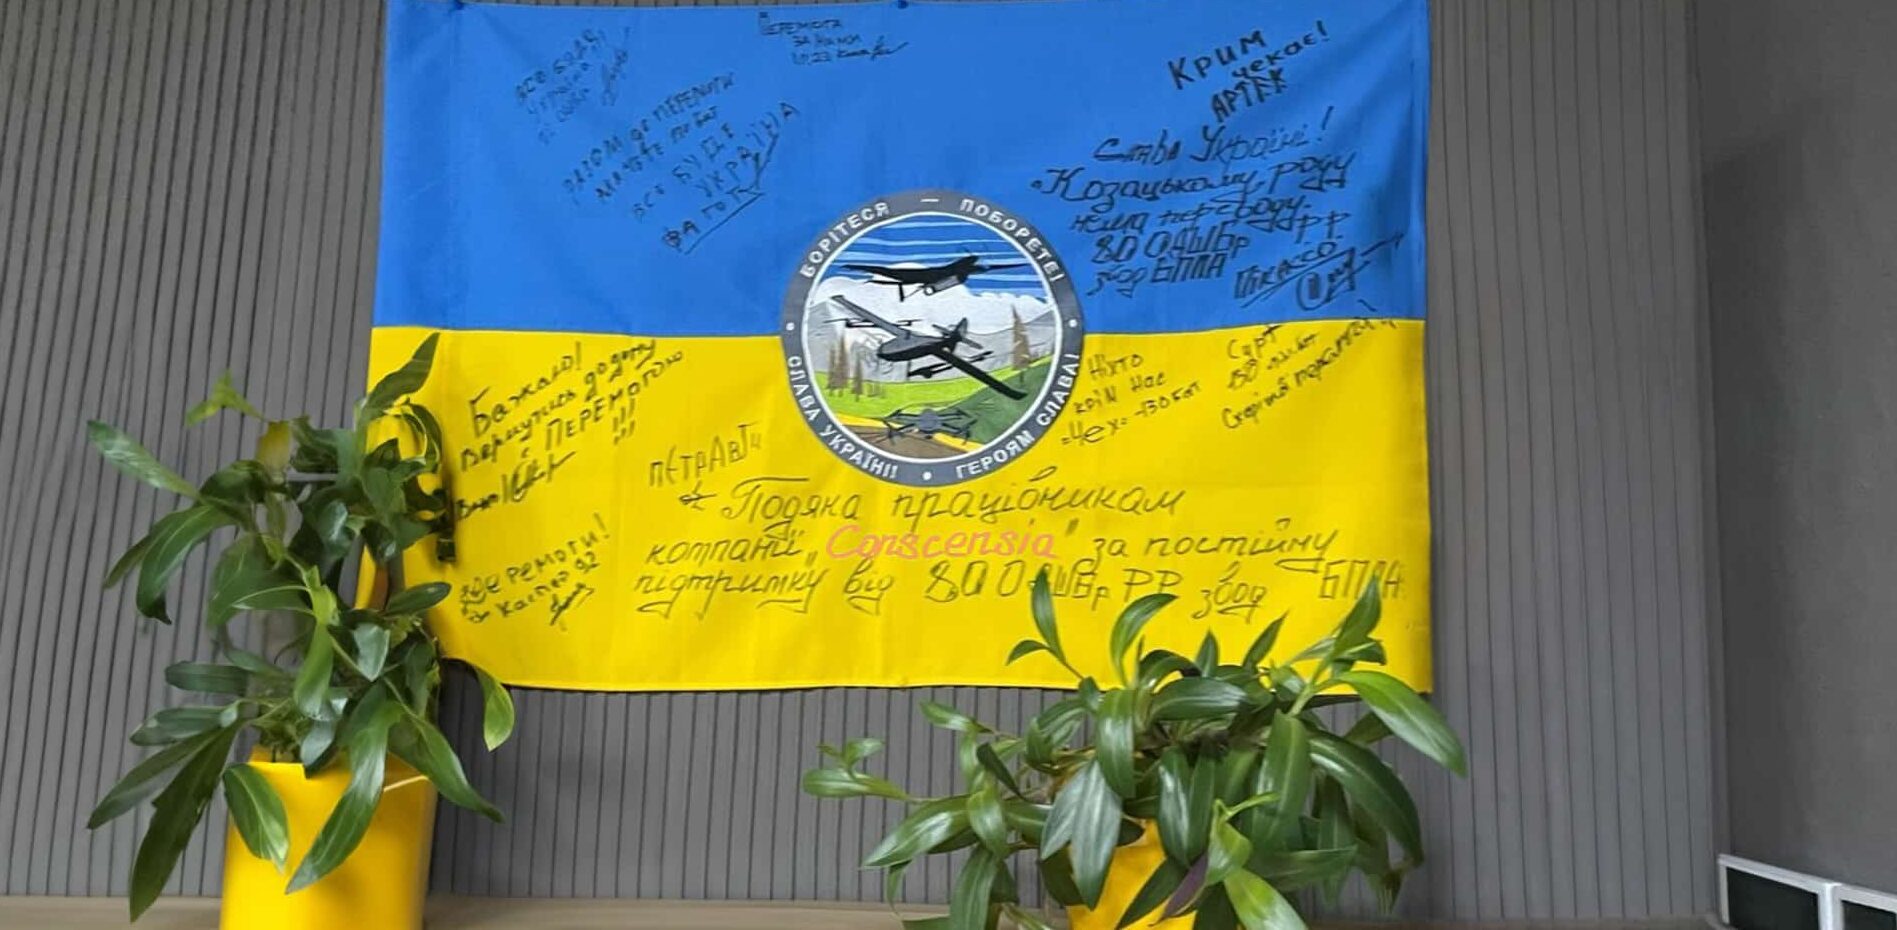 Et blåt og gult ukrainsk flag med signaturer og en besked på ukrainsk, der udtrykker taknemmelighed til Conscensias ansatte for deres støtte, hængende på en væg.